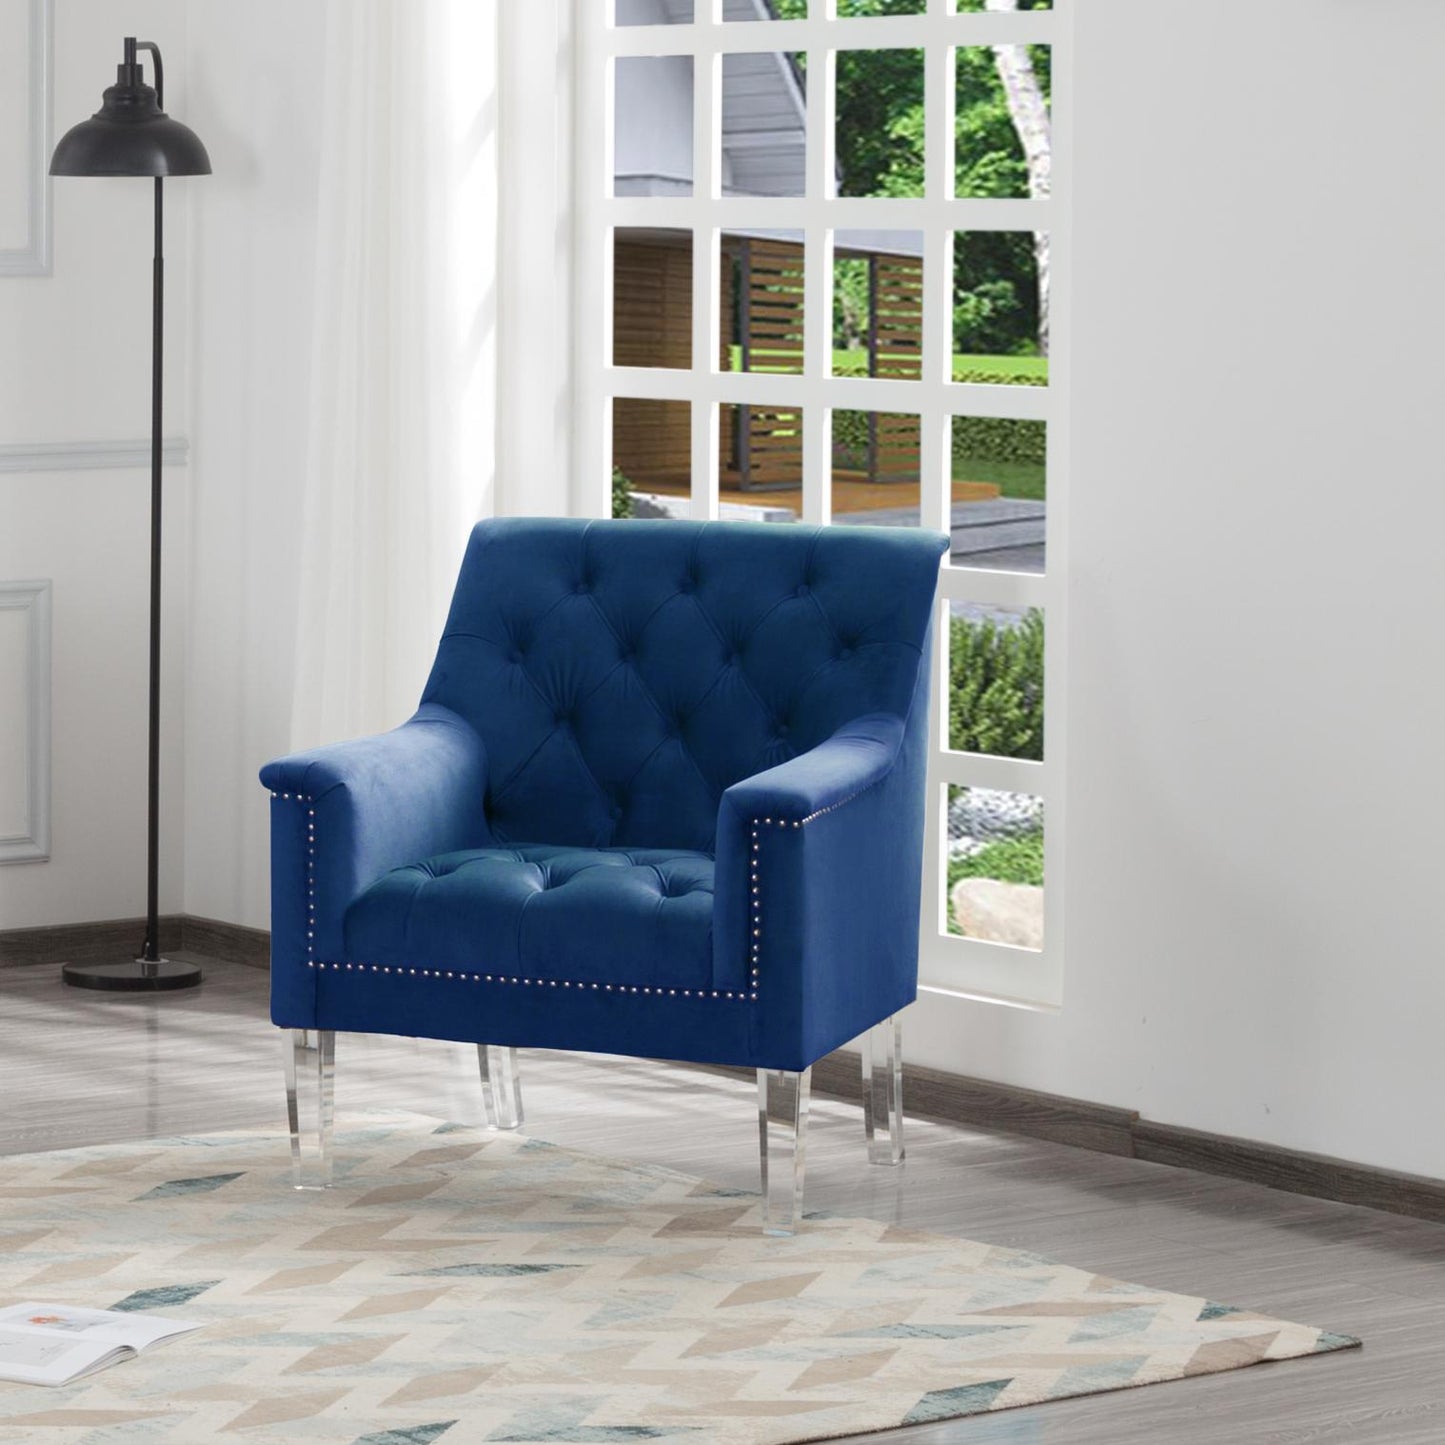 Living Room CHAIR Navy Blue Velvet